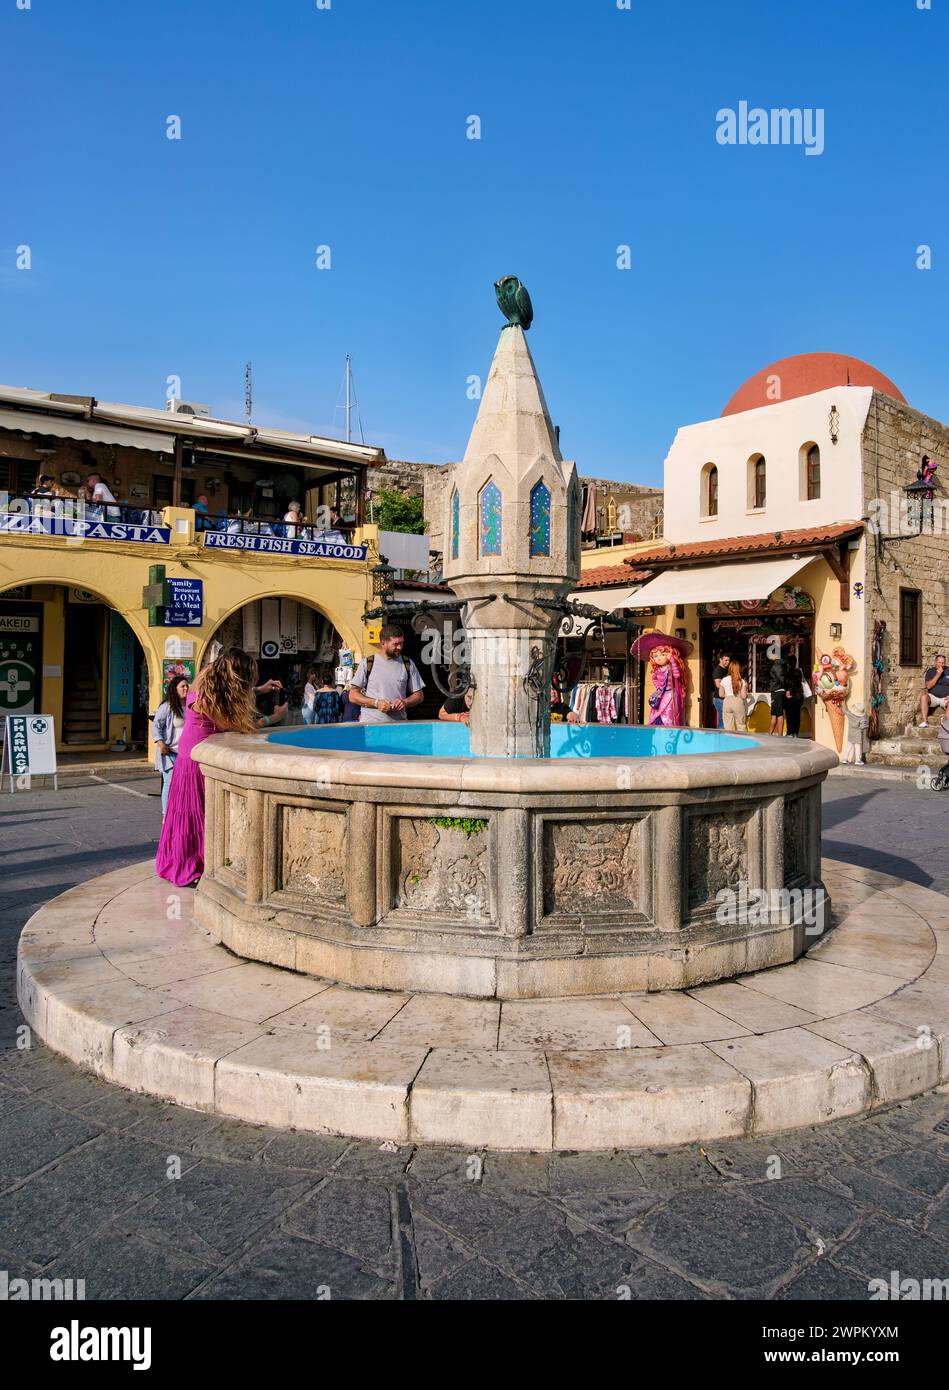 Fontaine à Hippocrate Square, vieille ville médiévale, Rhodes City, Rhodes Island, Dodécanèse, îles grecques, Grèce, Europe Banque D'Images